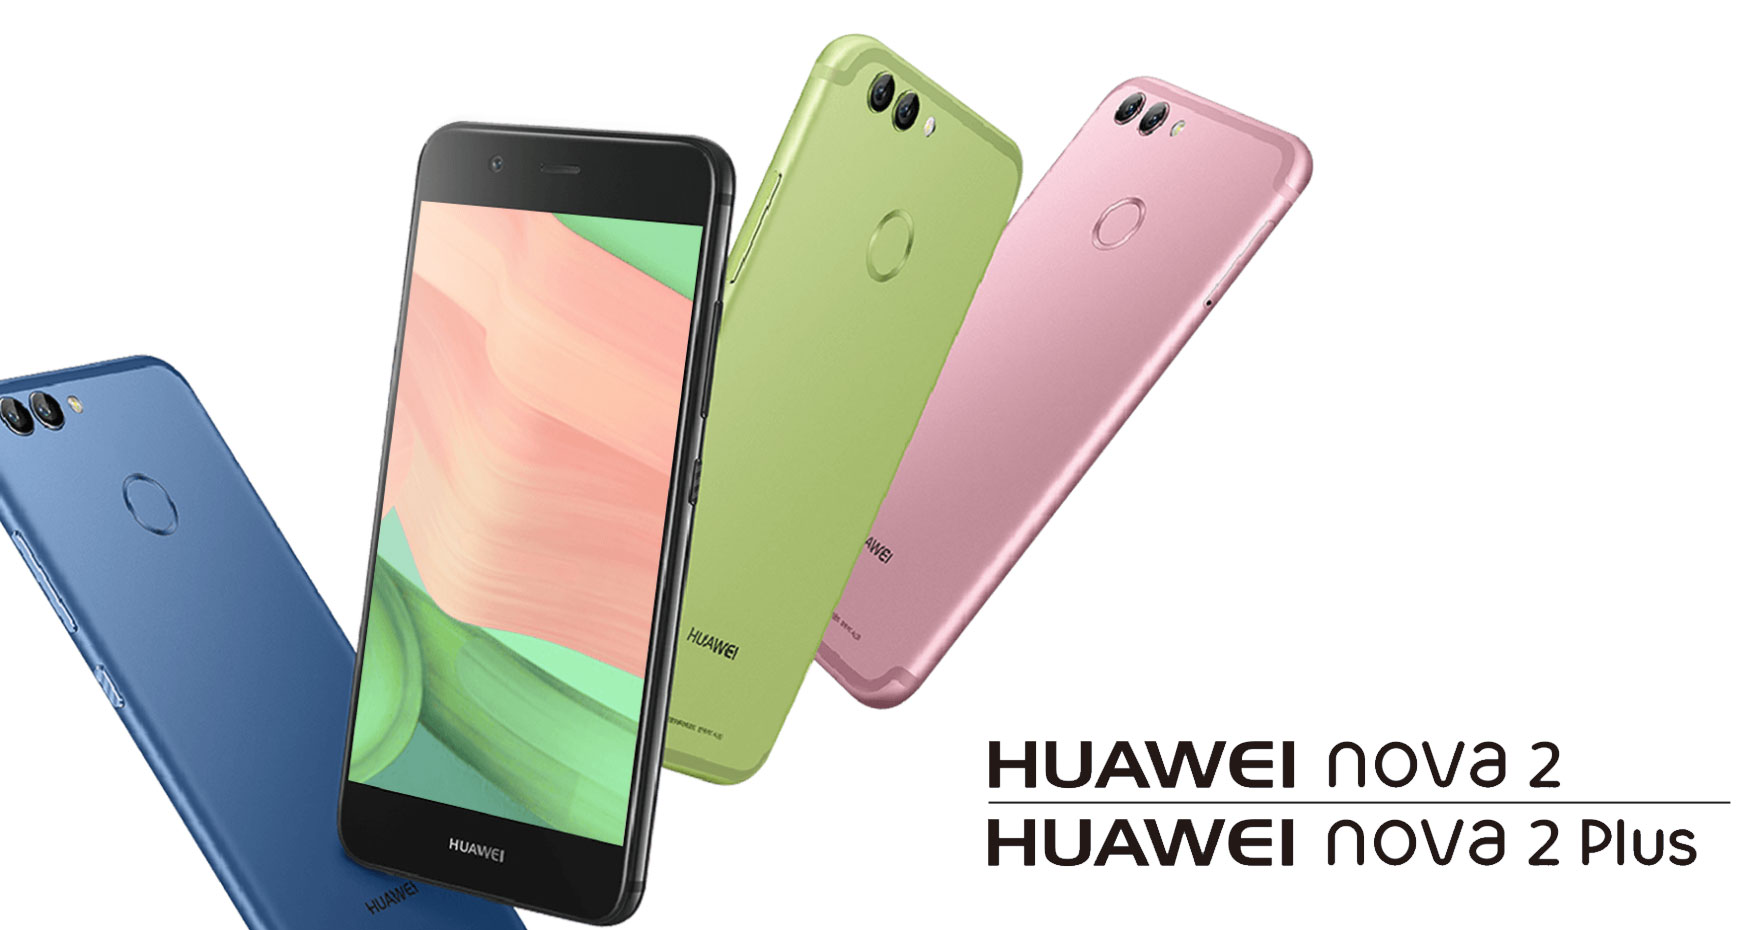 เปิดตัว Huawei Nova 2 และ Huawei Nova 2 Plus ชัดทุกอนู ด้วยกล้องหน้า 20MP กล้องหลังคู่ Dual Camera